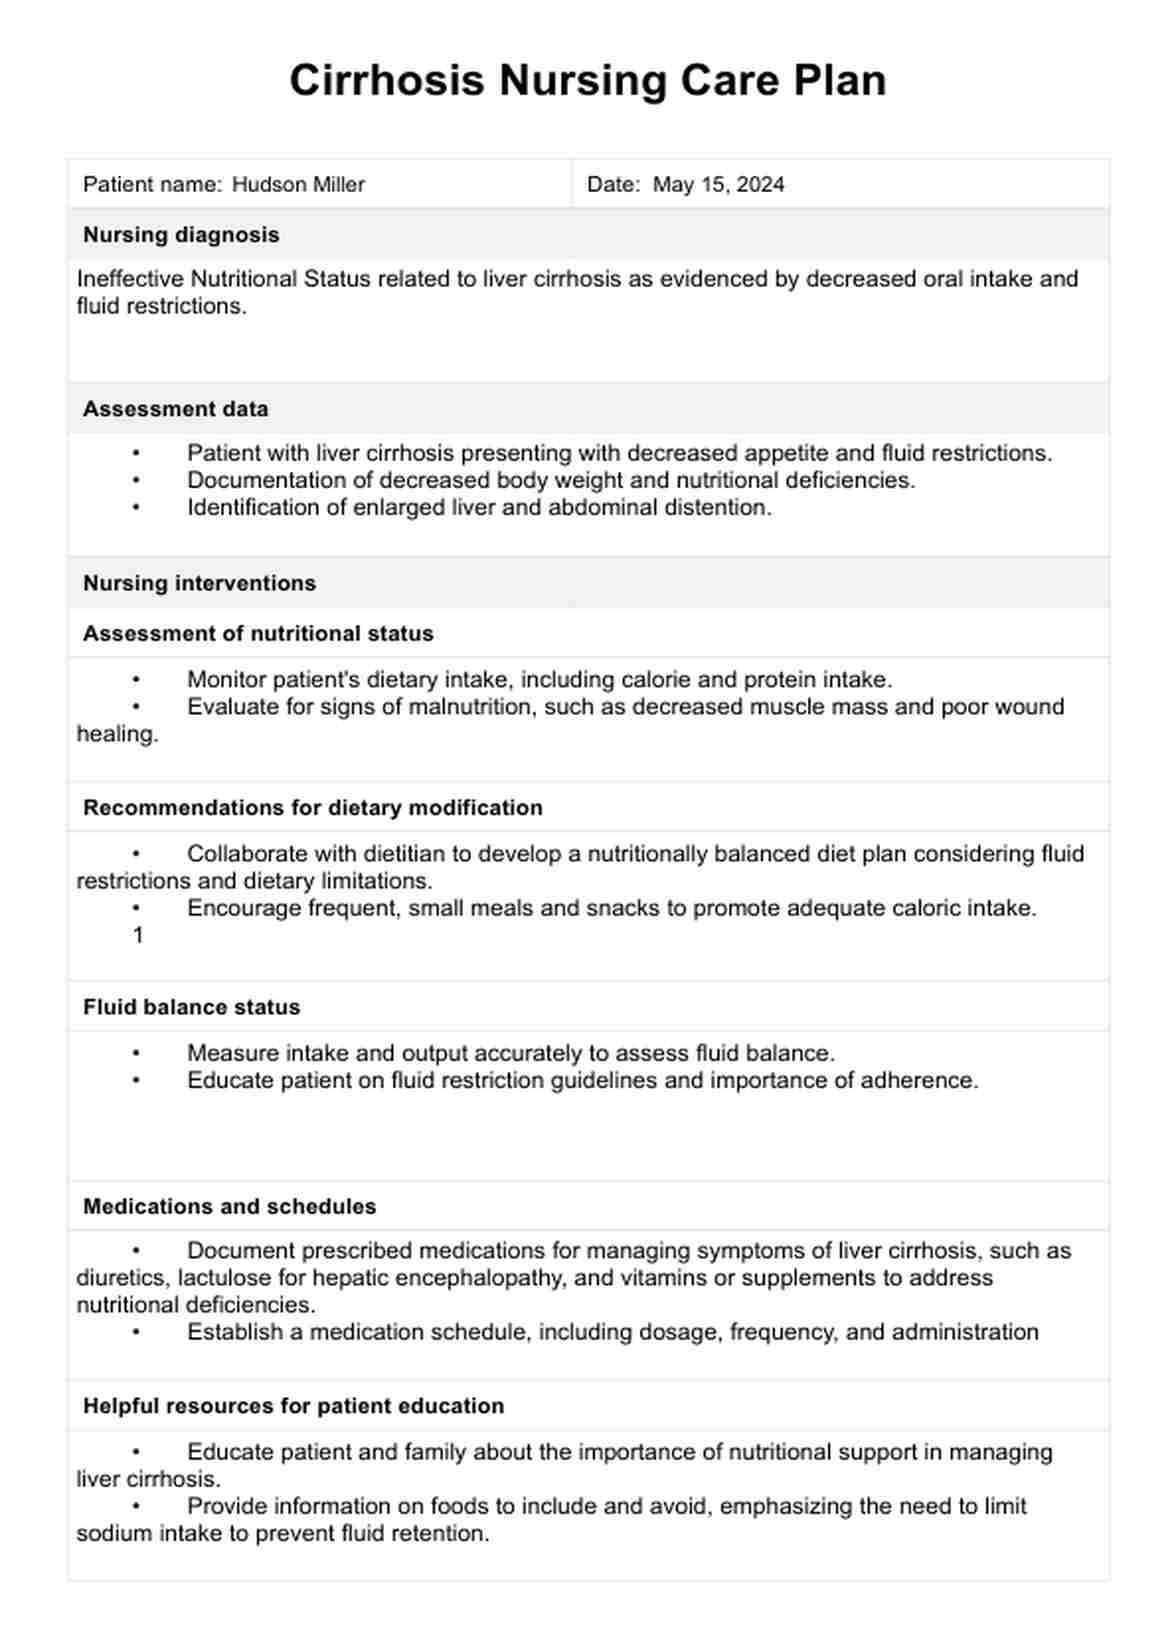 Cirrhosis Nursing Care Plan PDF Example